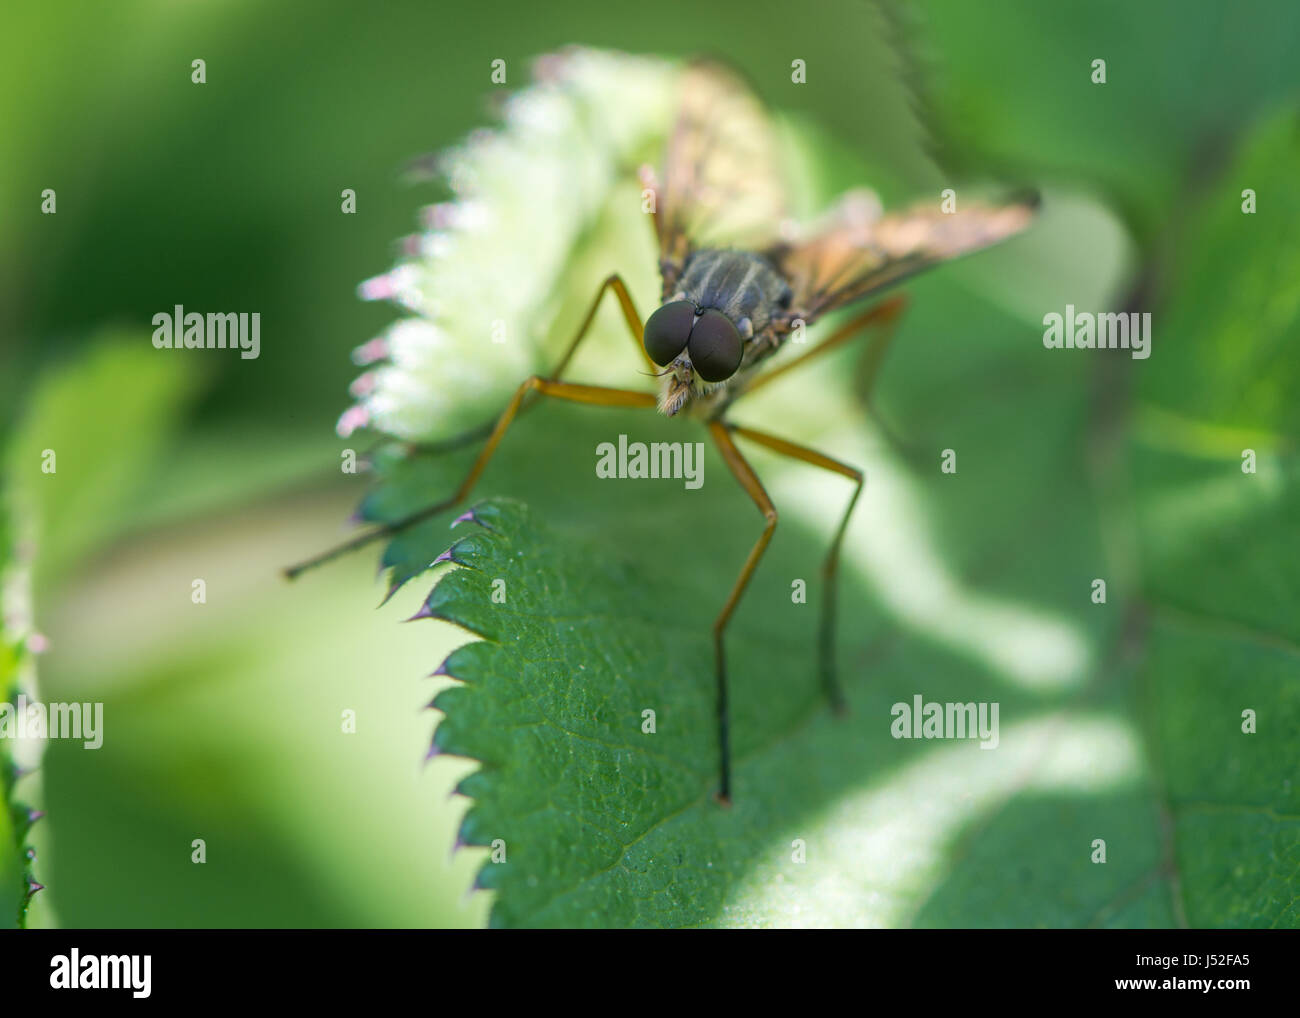 Snipe volar (Rhagio scolopaceus). Grandes ojos compuestos y delgadas patas naranja de la verdadera mosca en la familia Rhagionidae Foto de stock